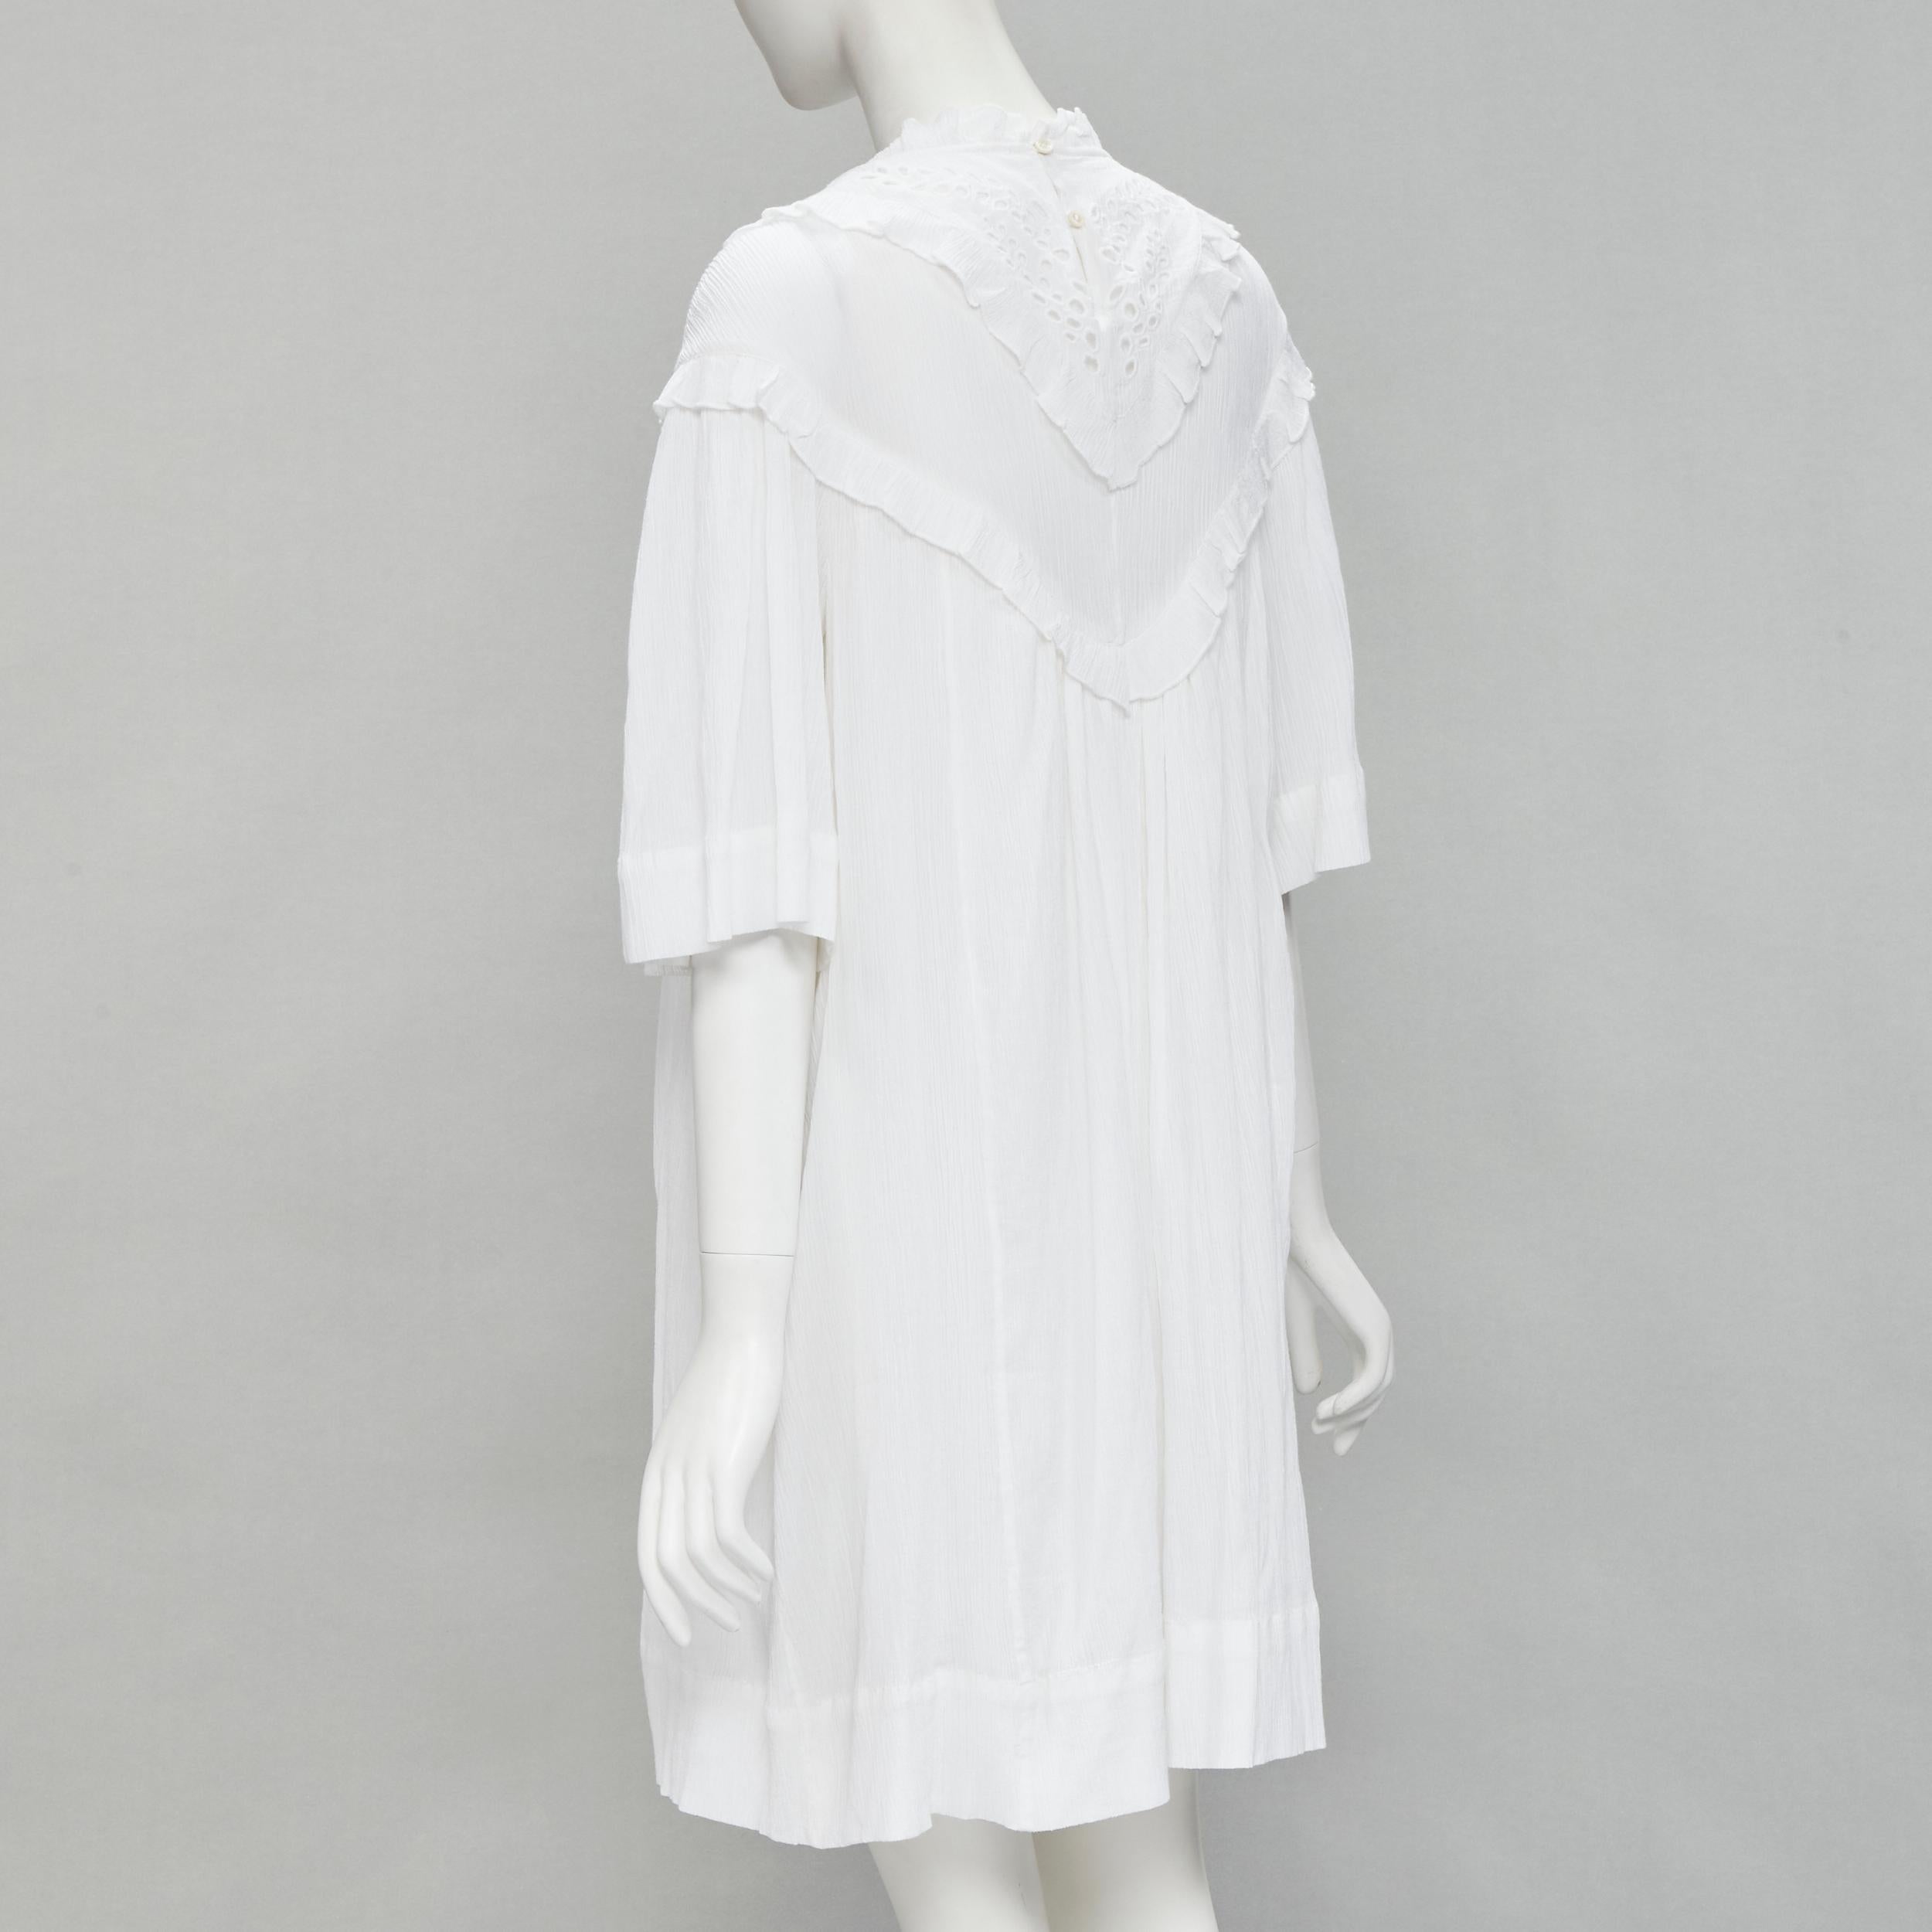 ISABEL MARANT ETOILE white viscose eyelet ruffle collar boho dress FR40 M For Sale 1